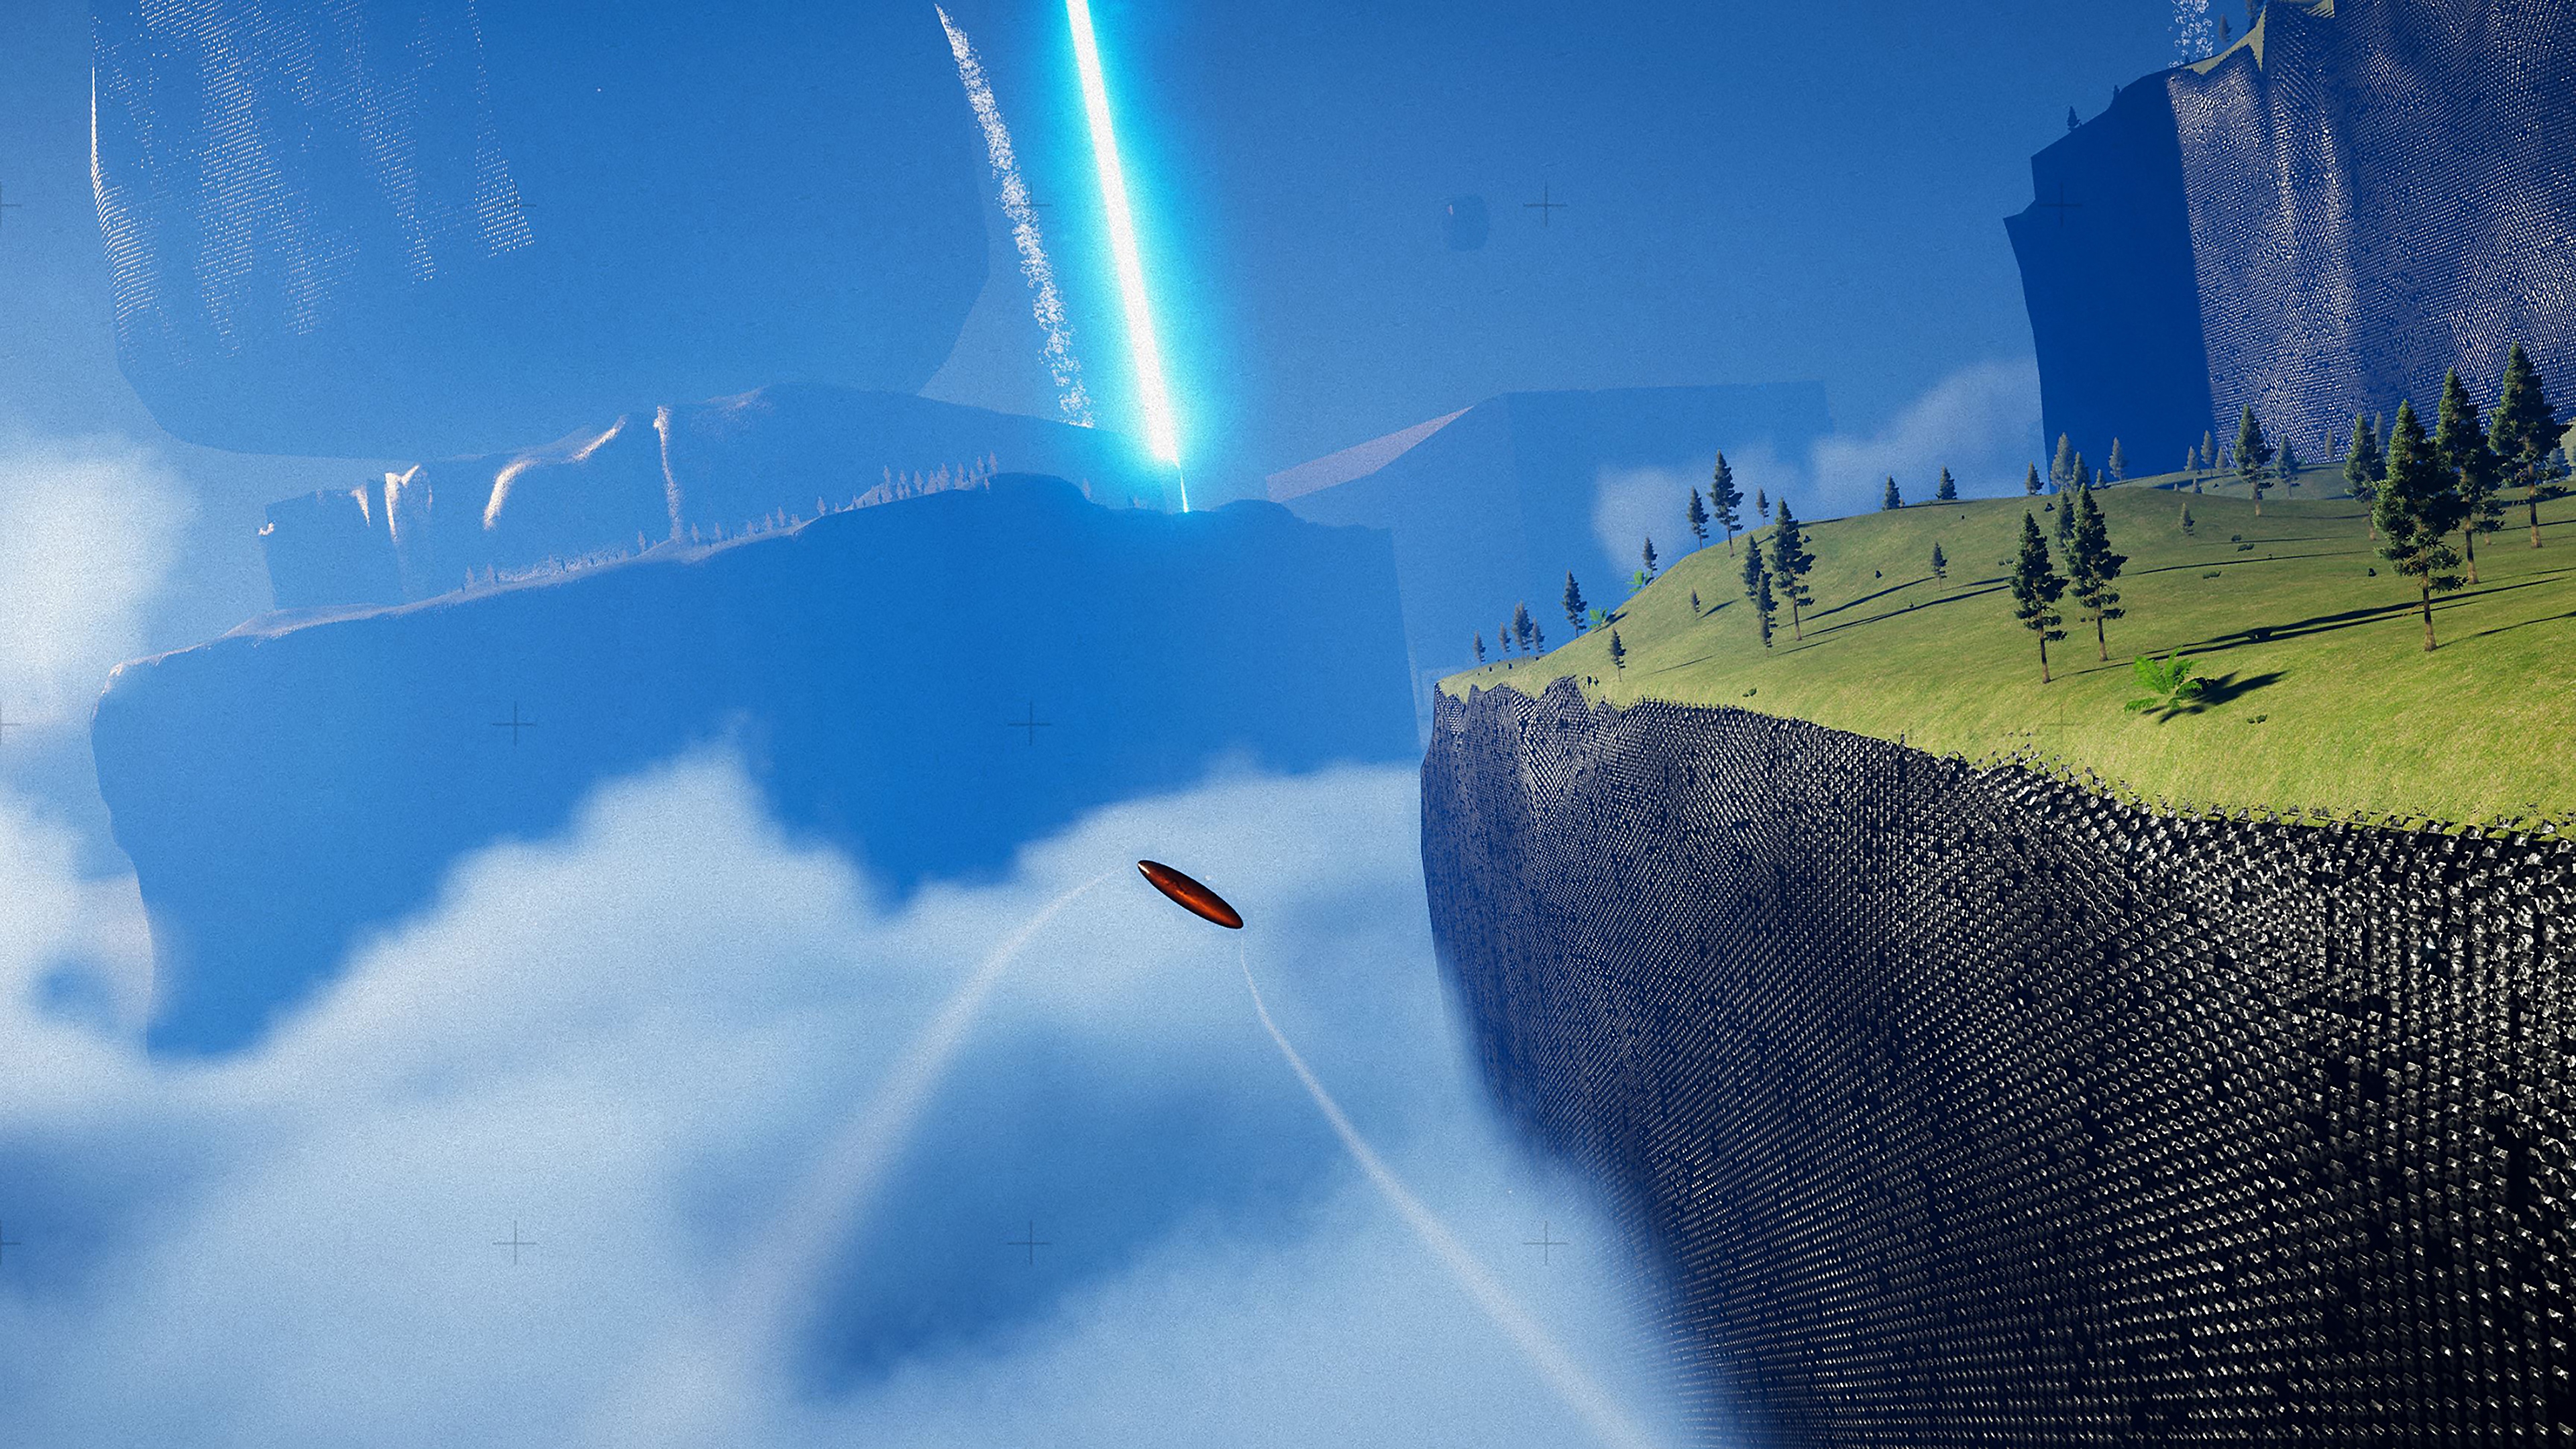 Exo One - captura de tela mostrando objeto voando perto de um penhasco